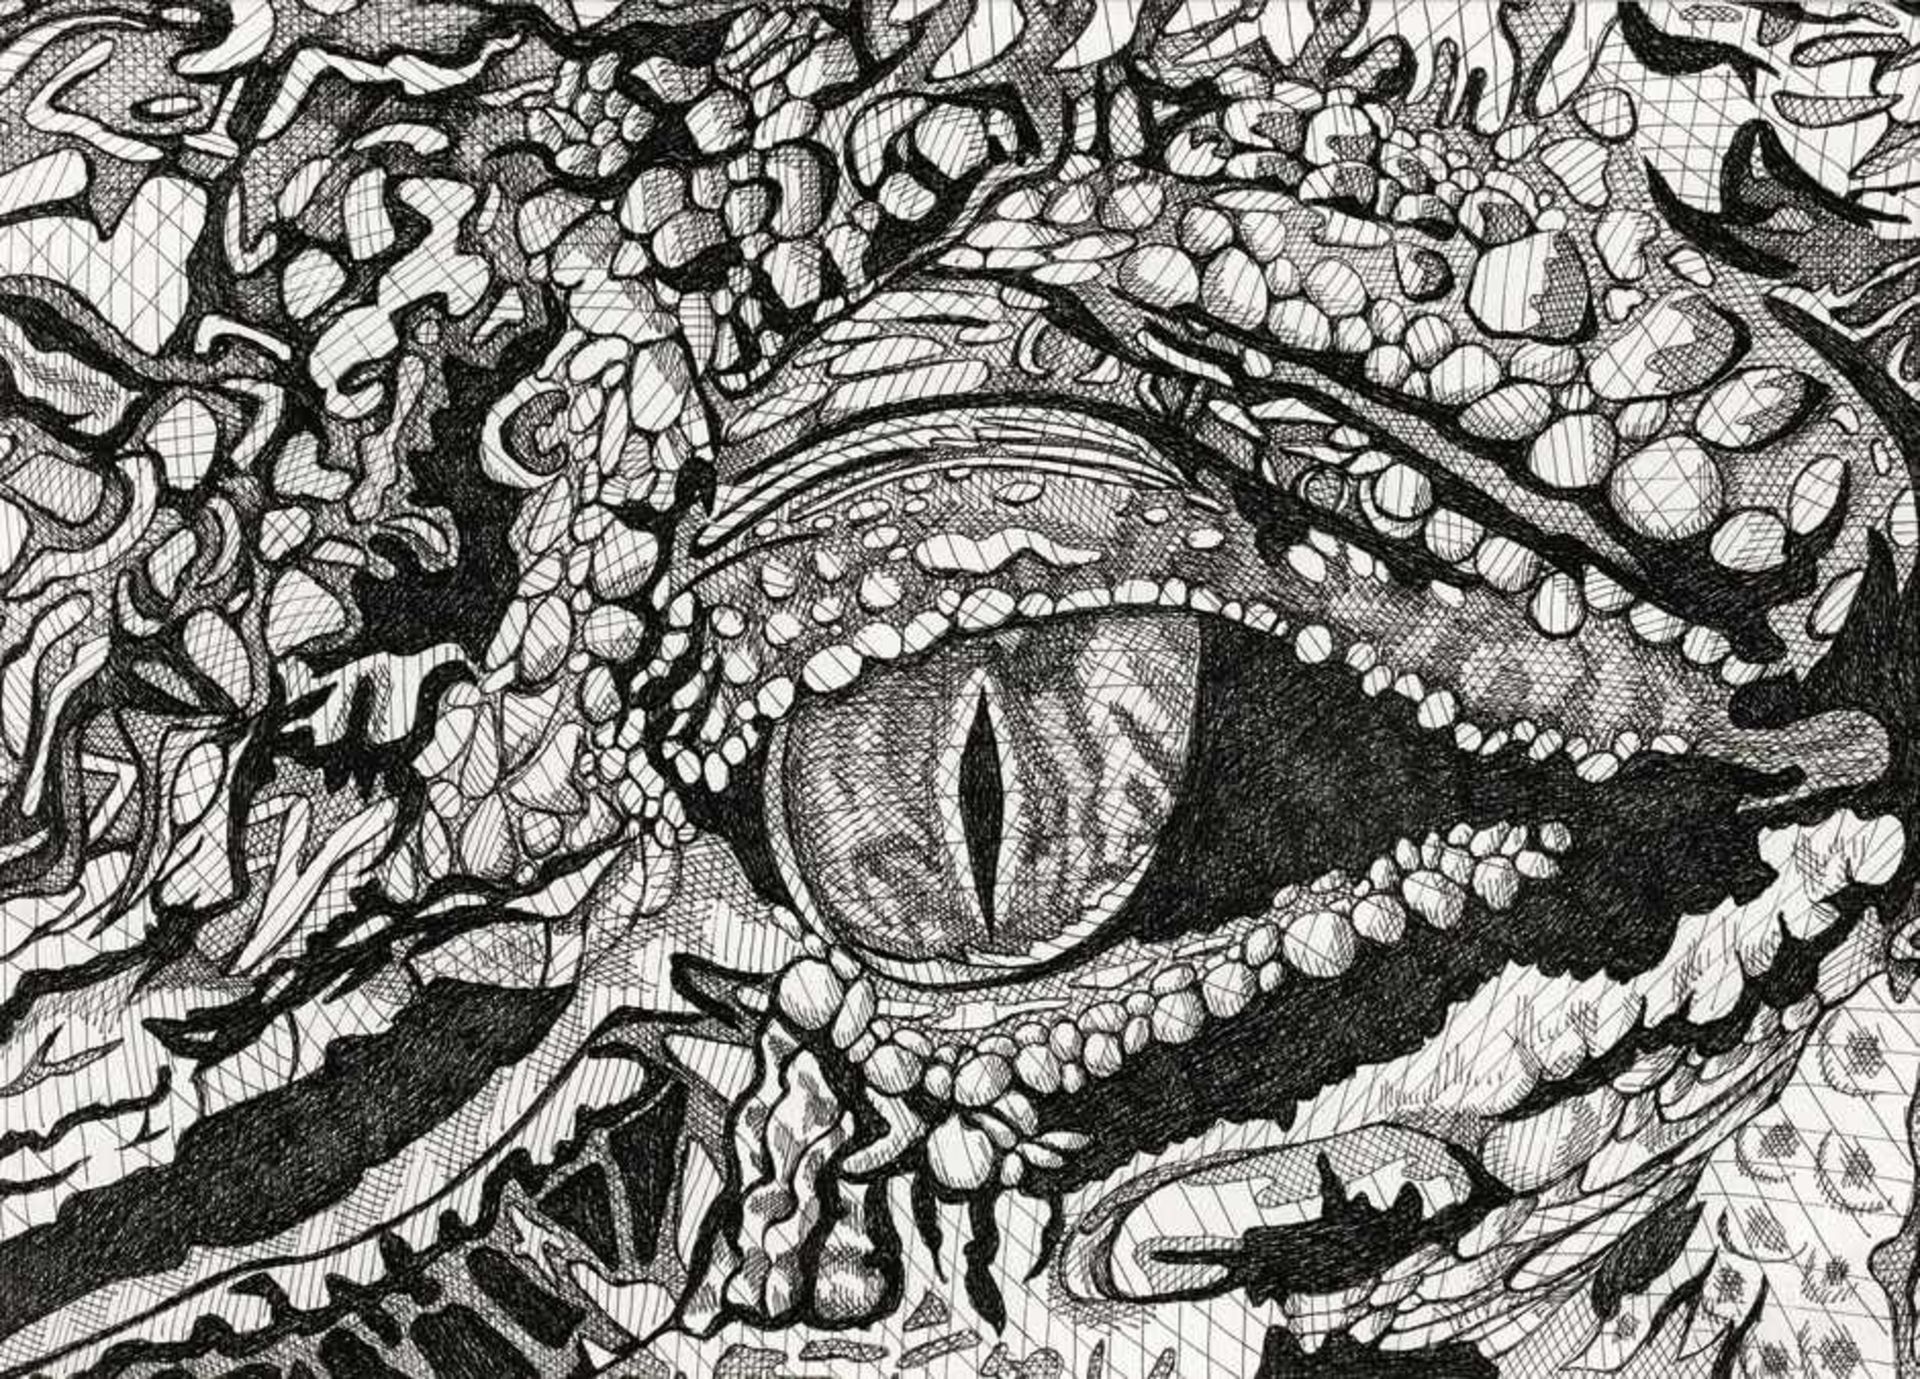 Fioratti Loreto, Arianna: Crocodile Eye"Crocodile Eye". Feder in Schwarz auf Papier. 24 x 33 cm.